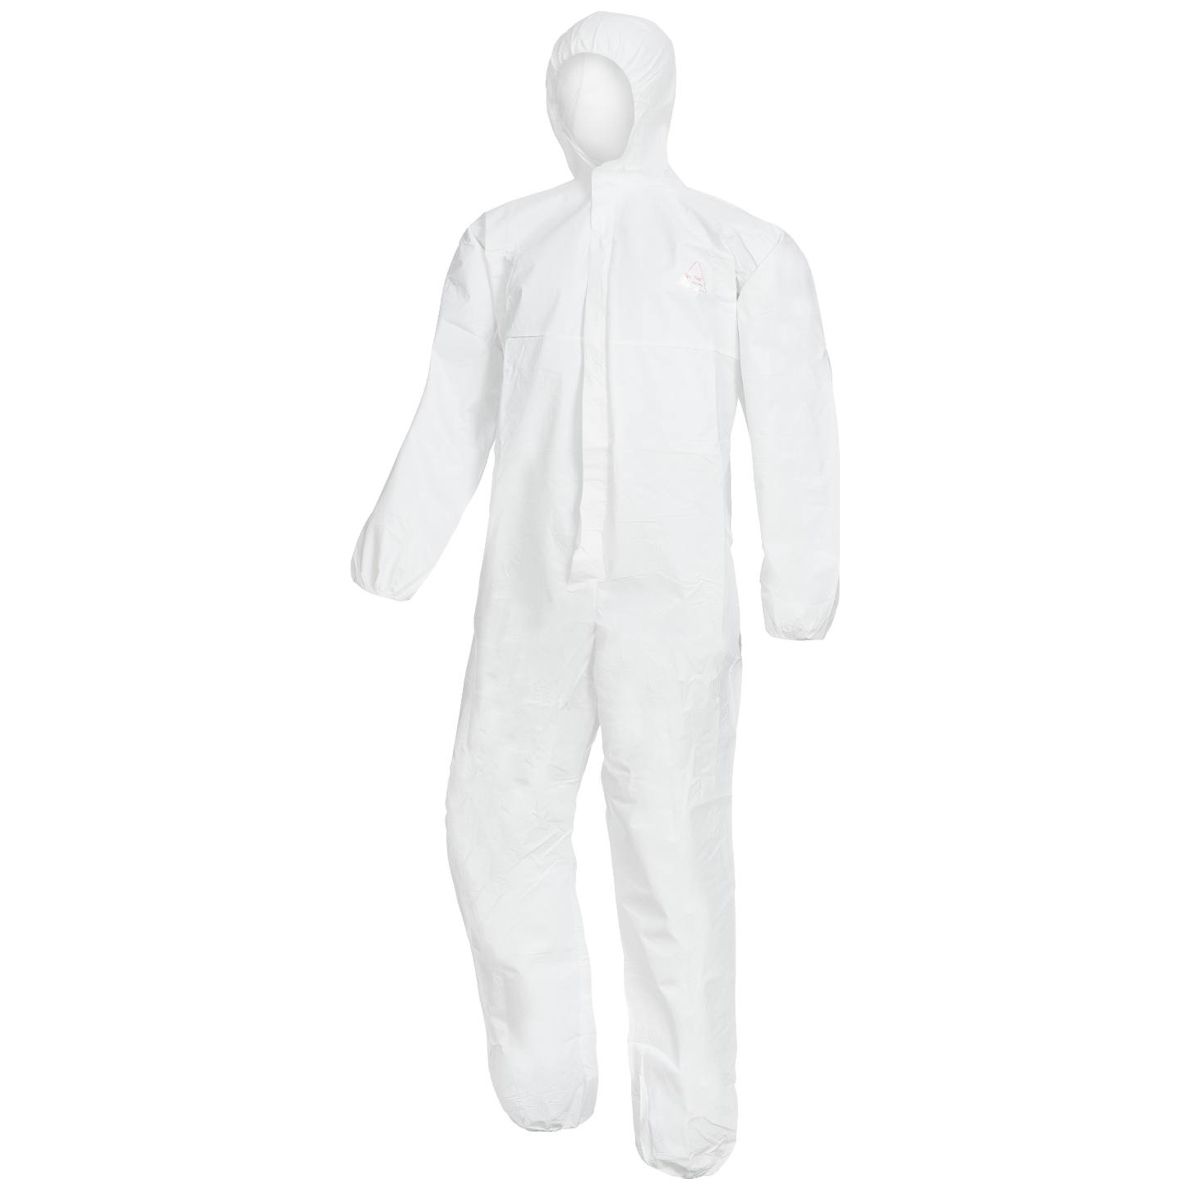 Einweg Schutzanzug weiß Kapuze Papier Anzug Maler Schutz Overall Anzug 1pc 